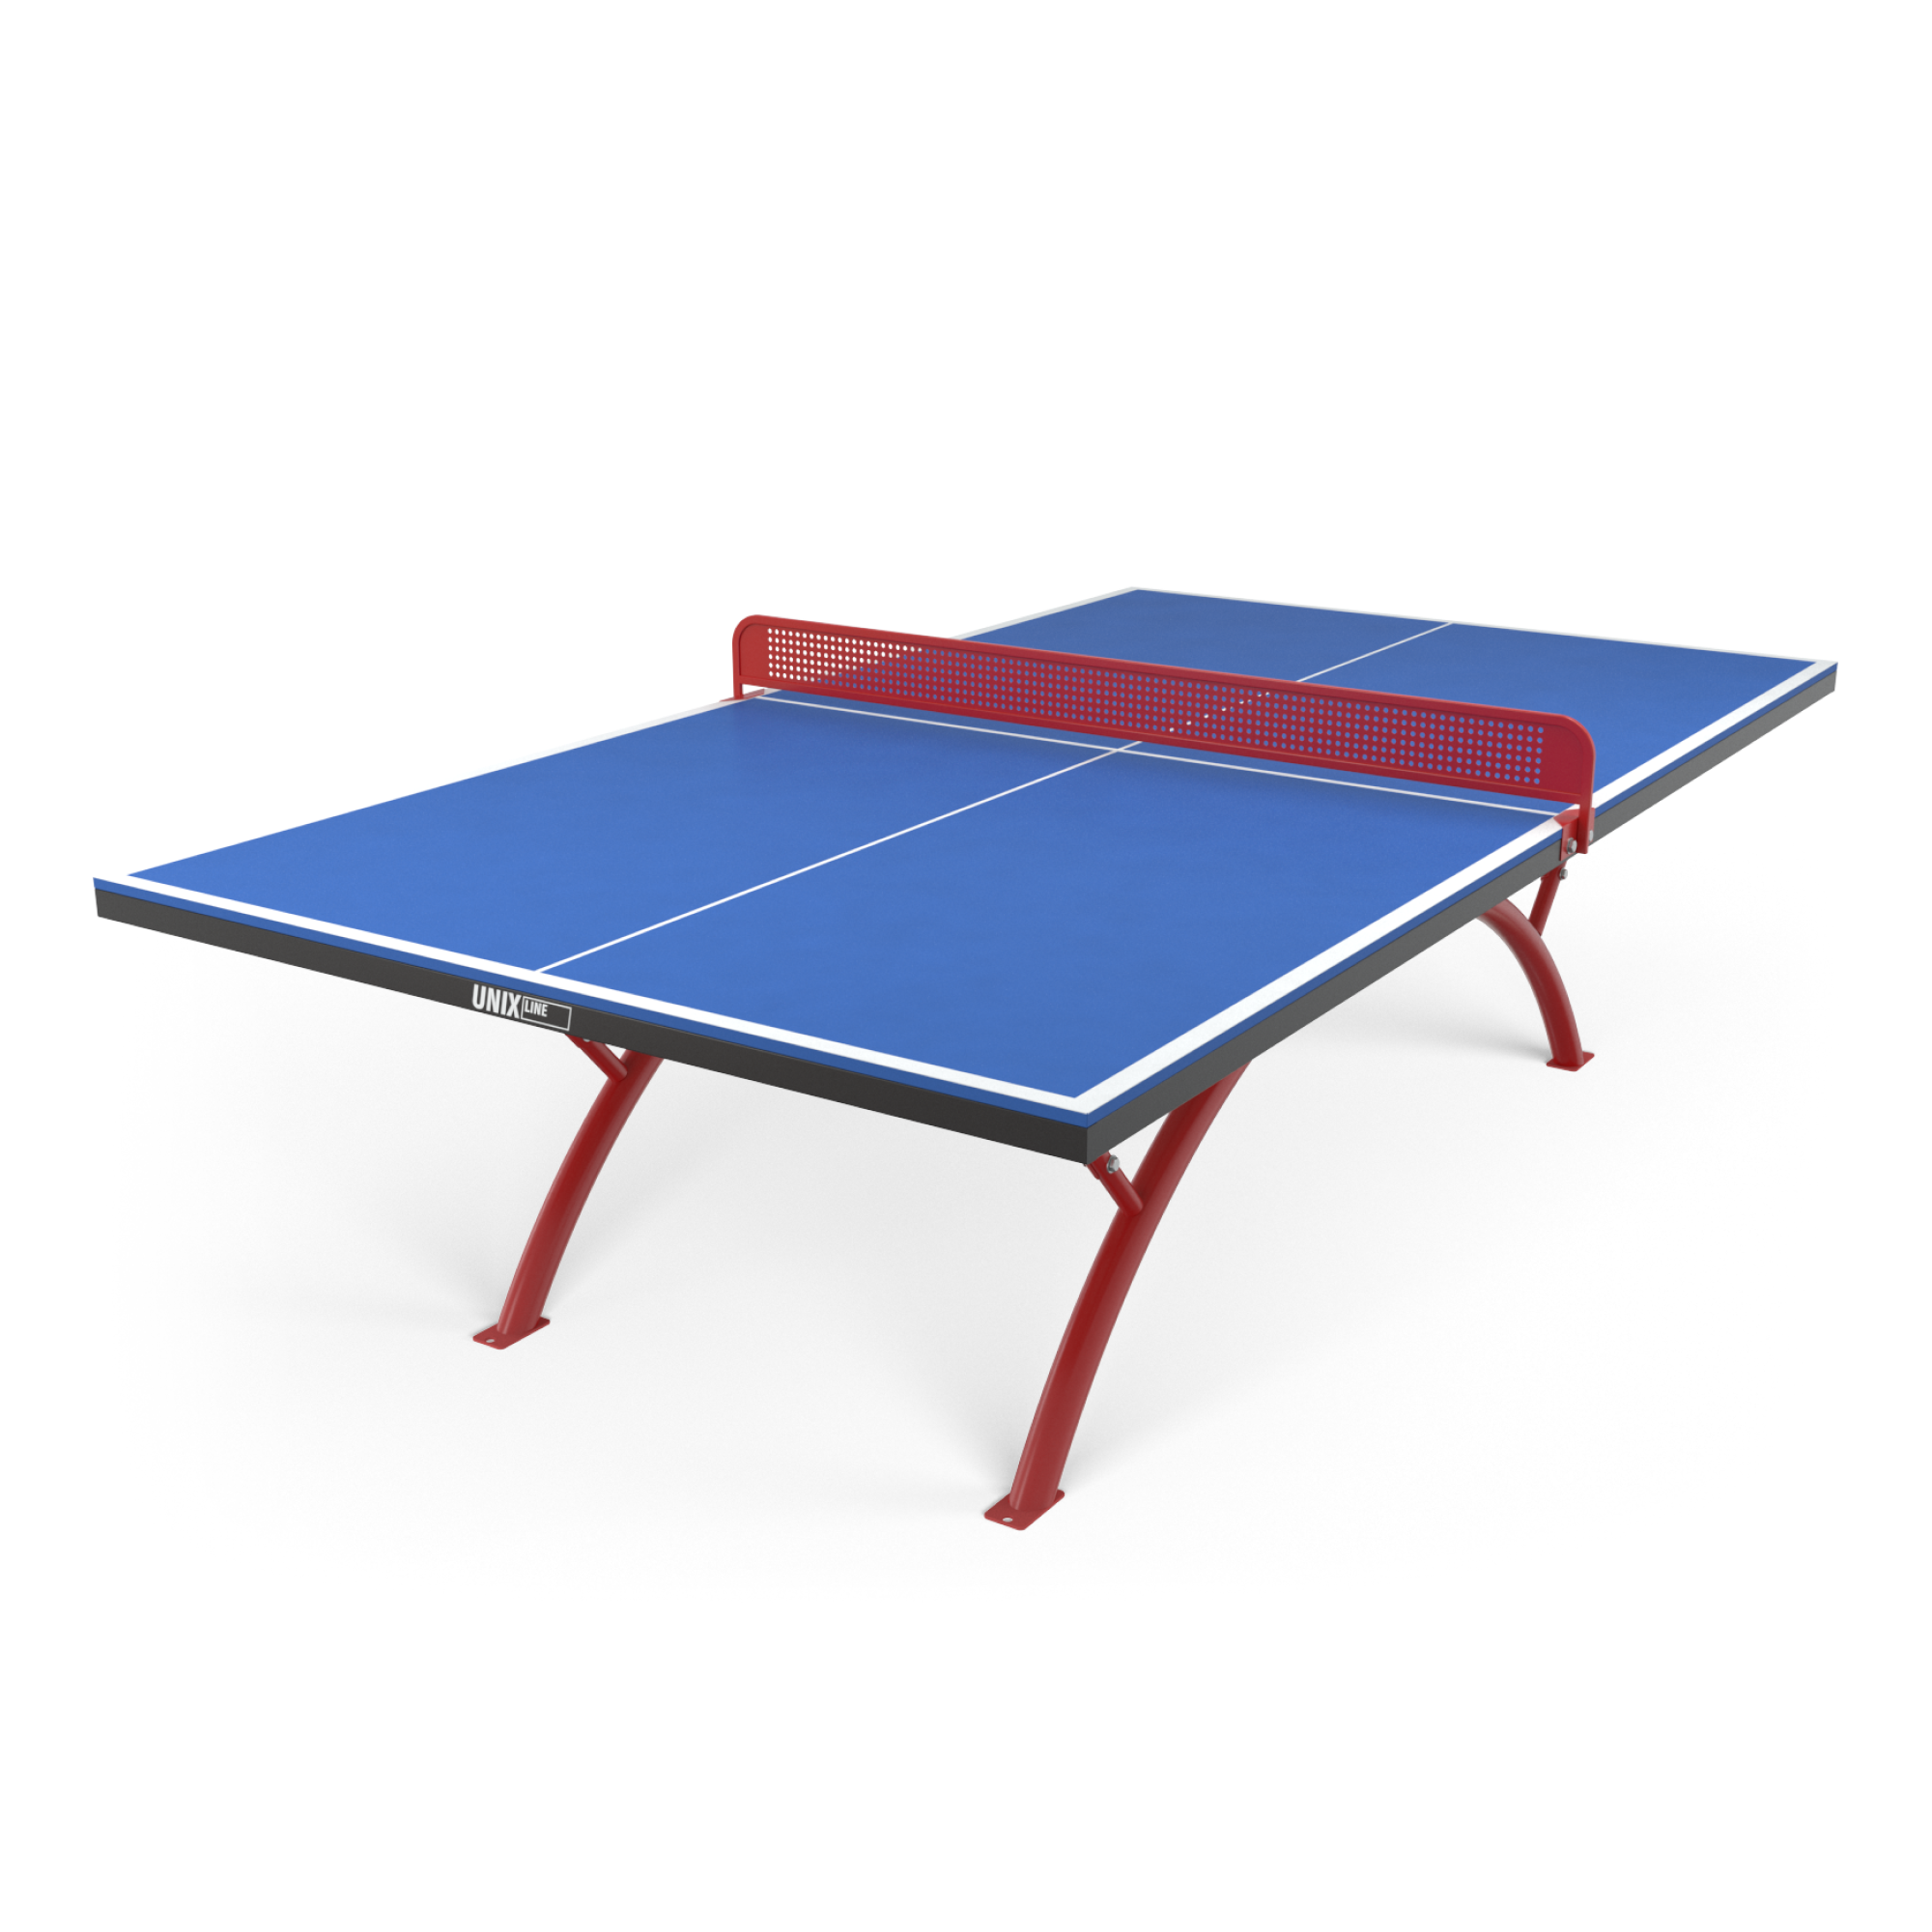 Теннисный стол Unix line Outdoor - 6 мм. Теннисный стол артикул: 2229.8. Аданат теннисный стол антивандальный. Уличный антивандальный стол для настольного тенниса. Теннисный стол unix